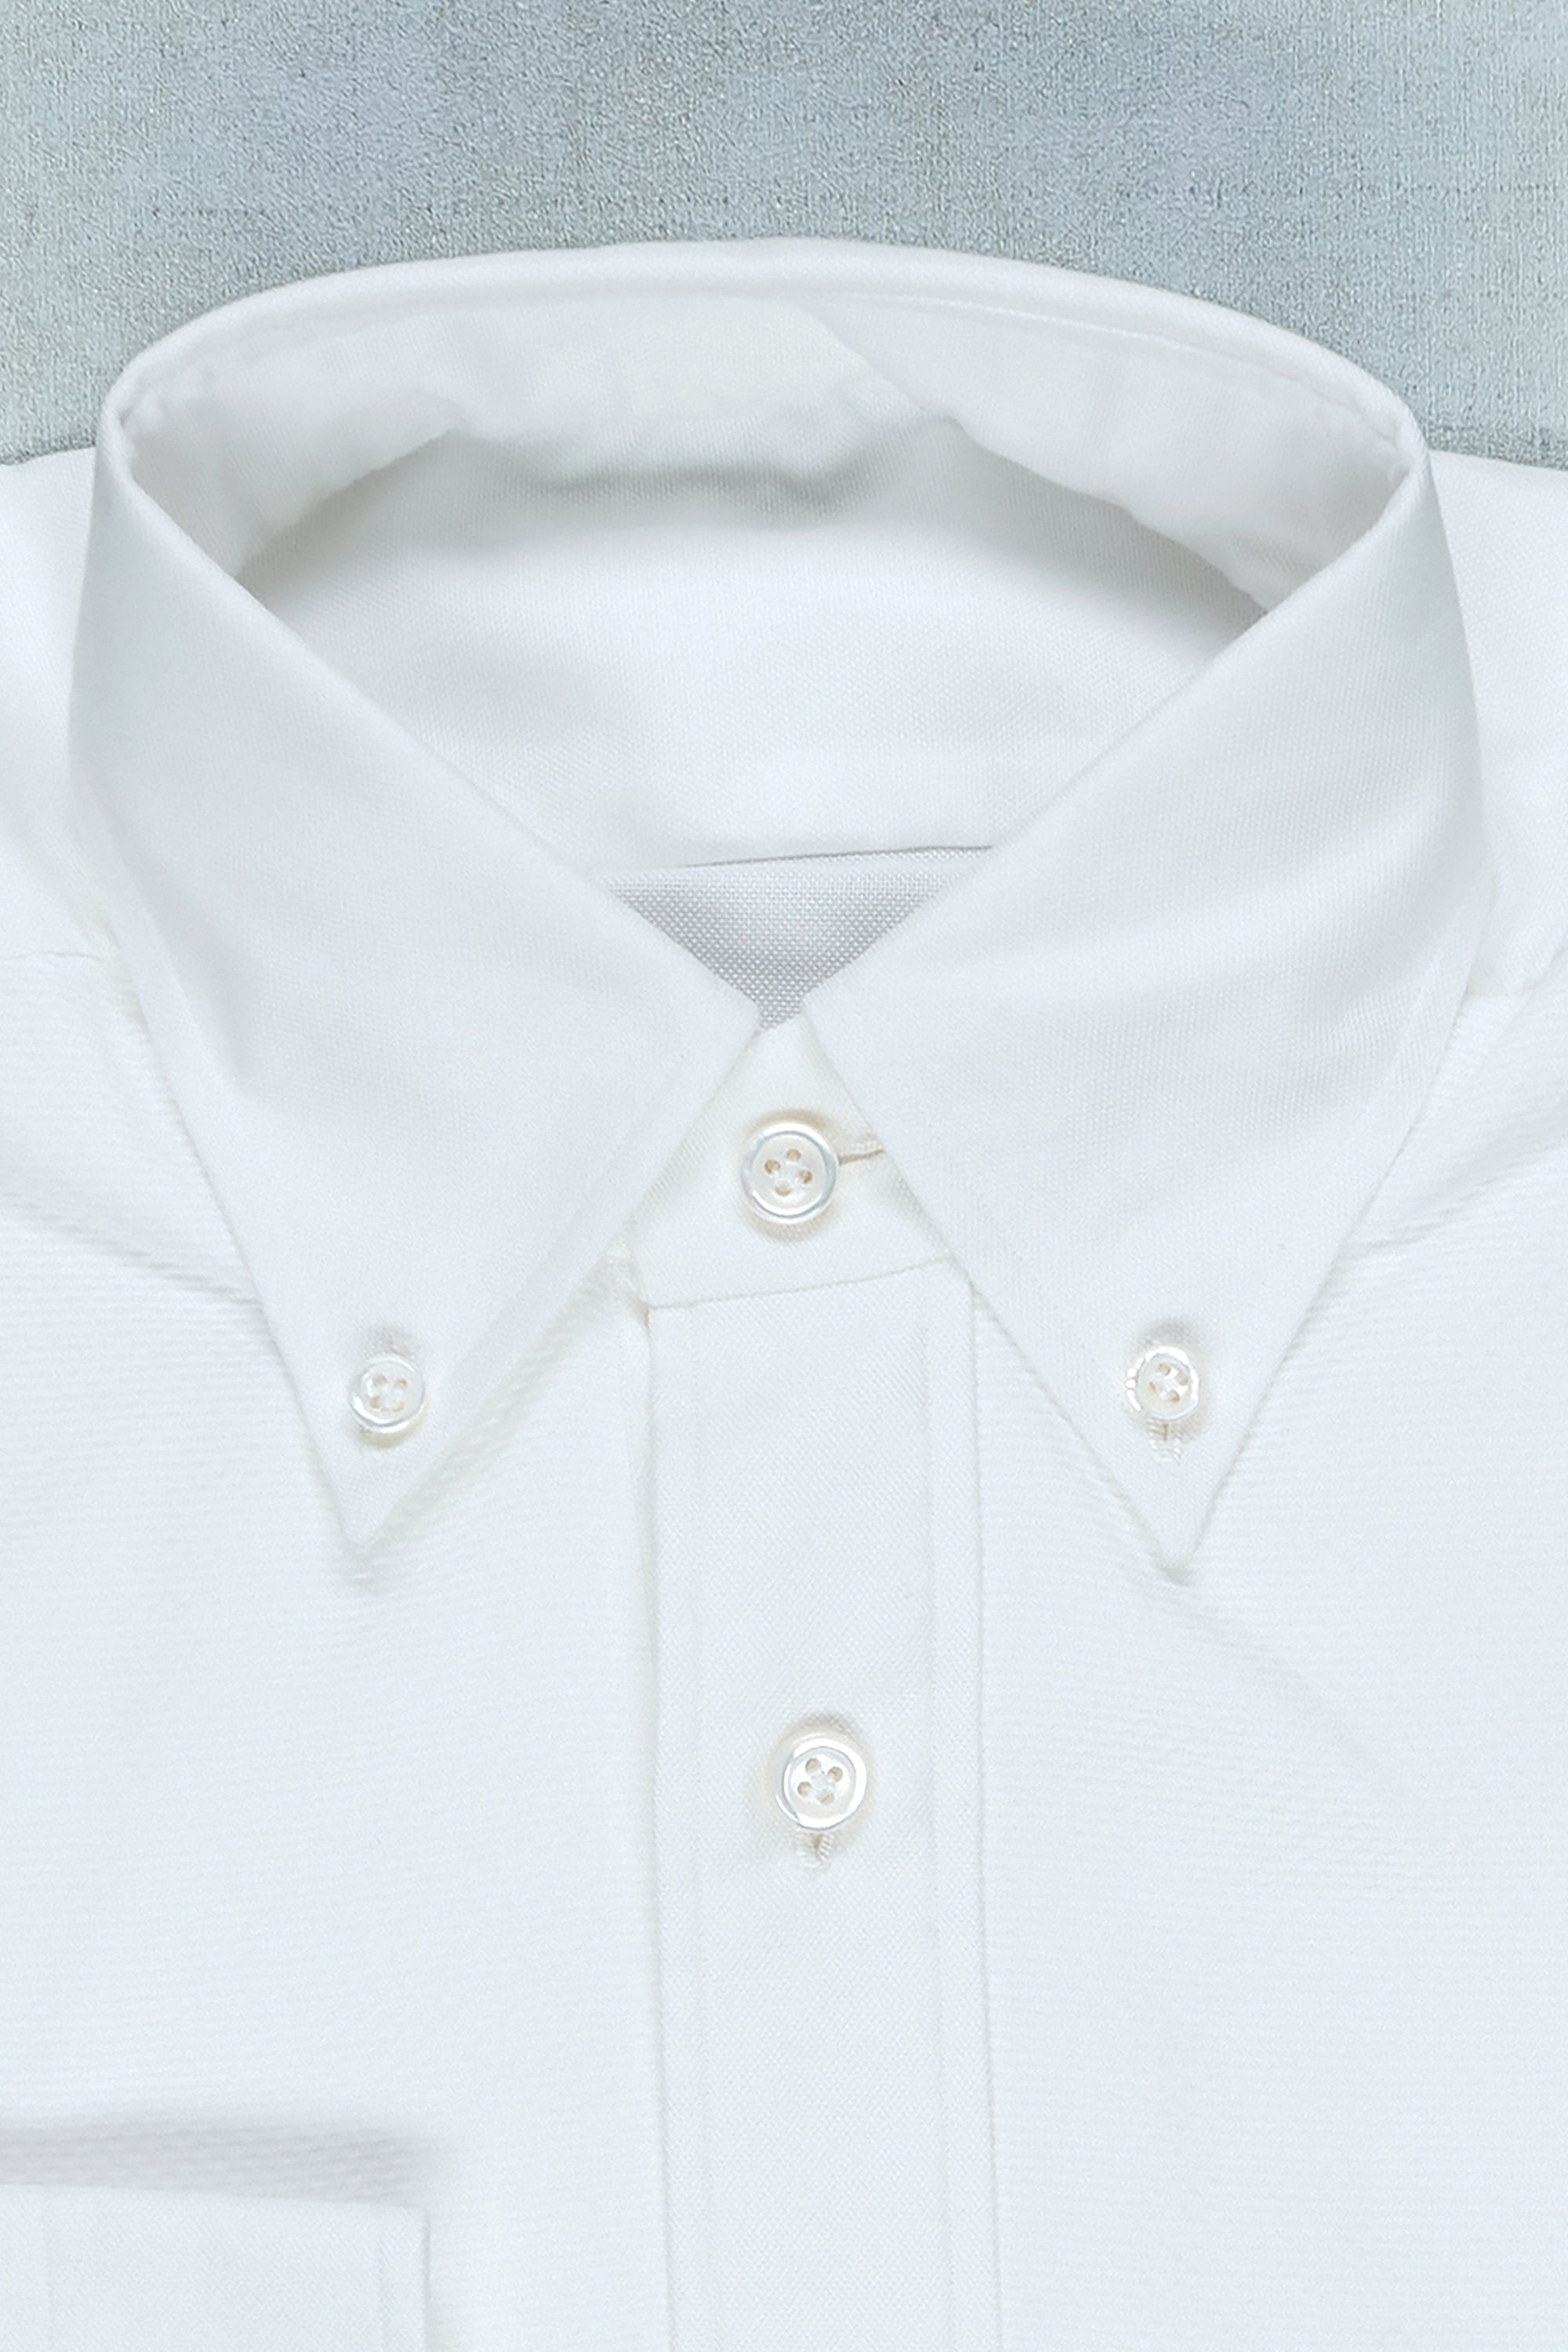 The Armoury White Cotton Tuxedo Shirt *sample*